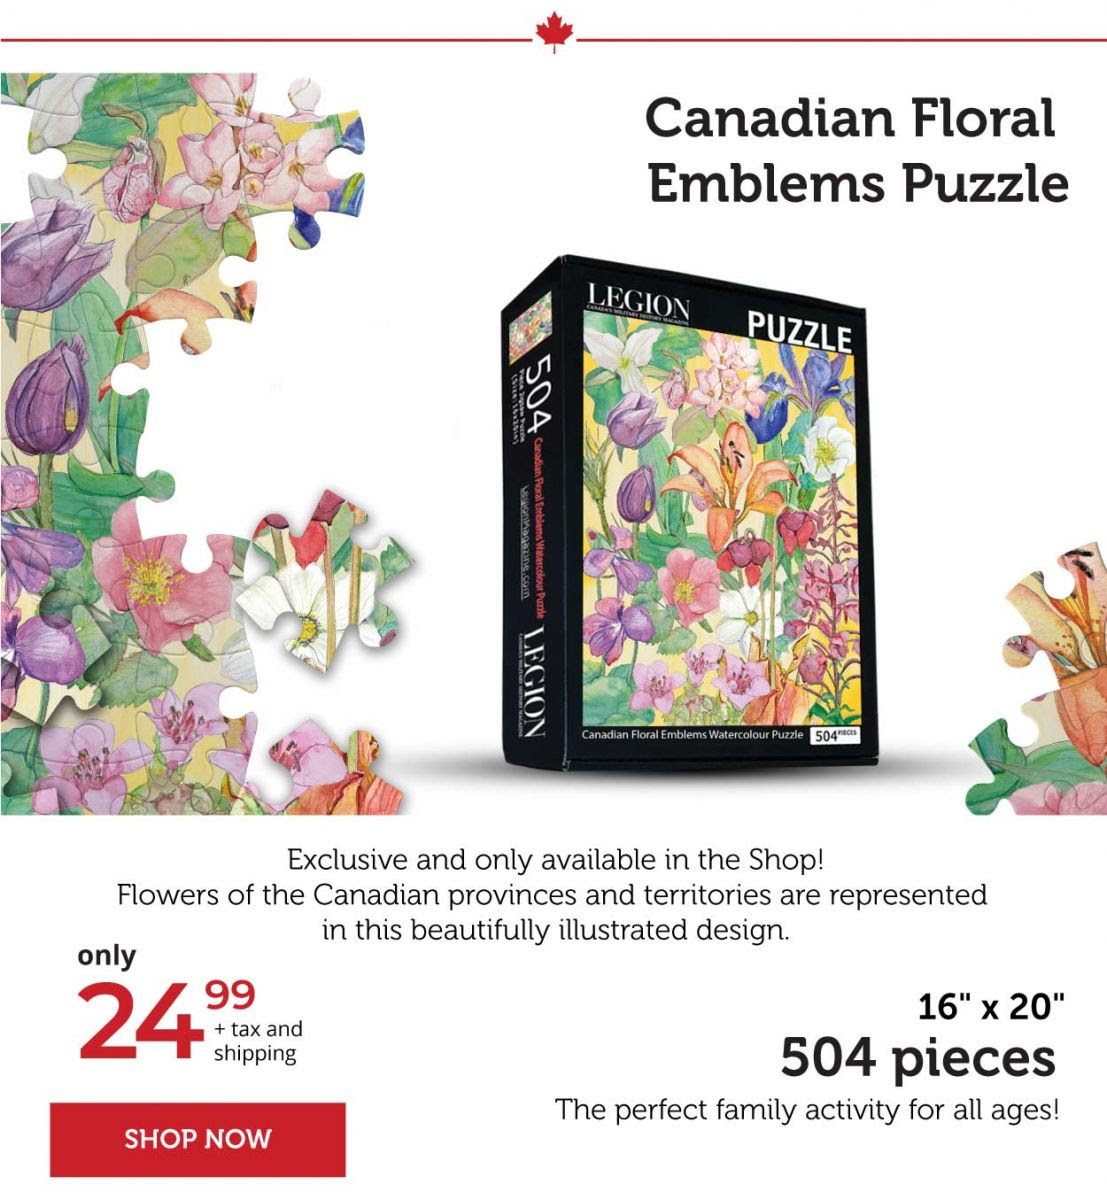 Canadian floral emblems puzzle